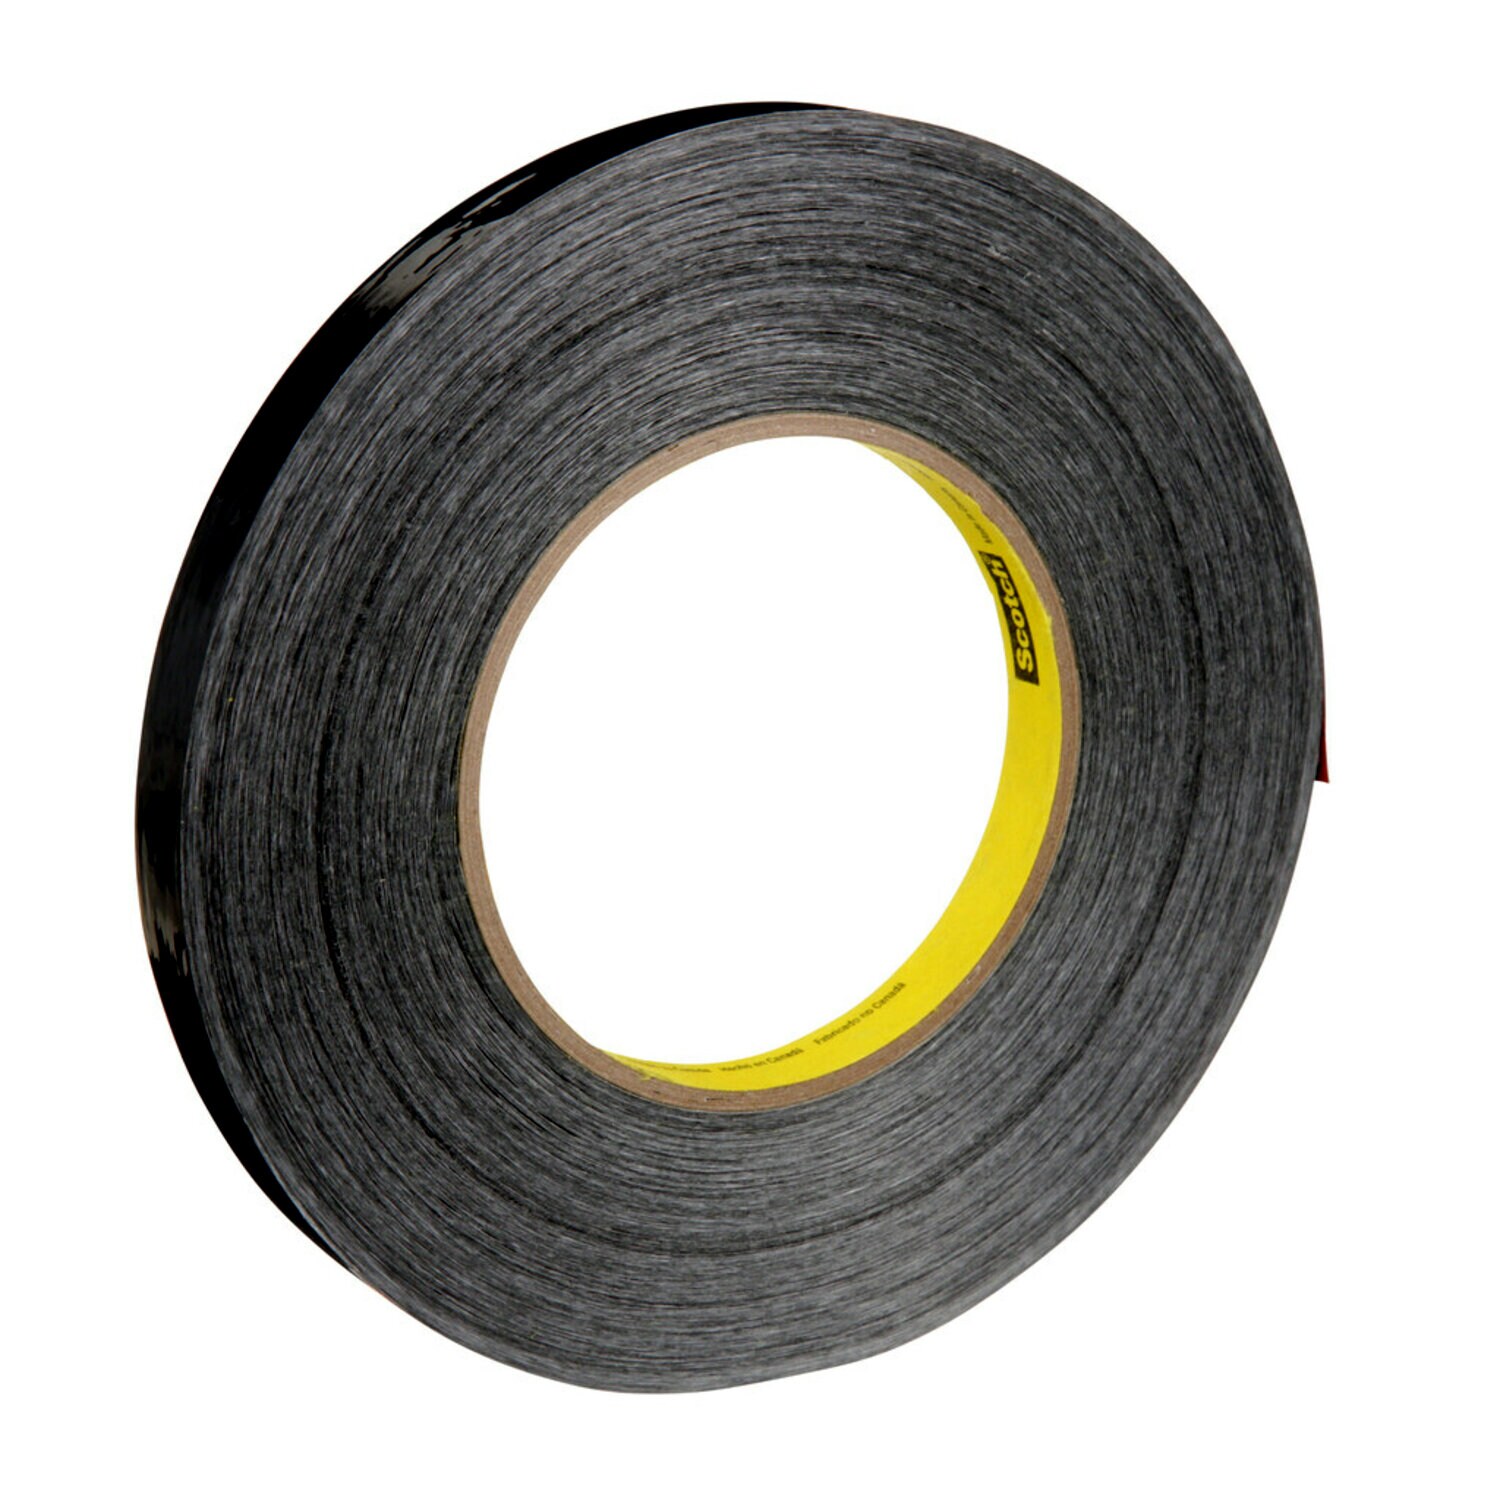 7000124632 - Scotch Filament Tape 890MSR, Black, 24 mm x 55 m, 8 mil, 36 rolls per
case